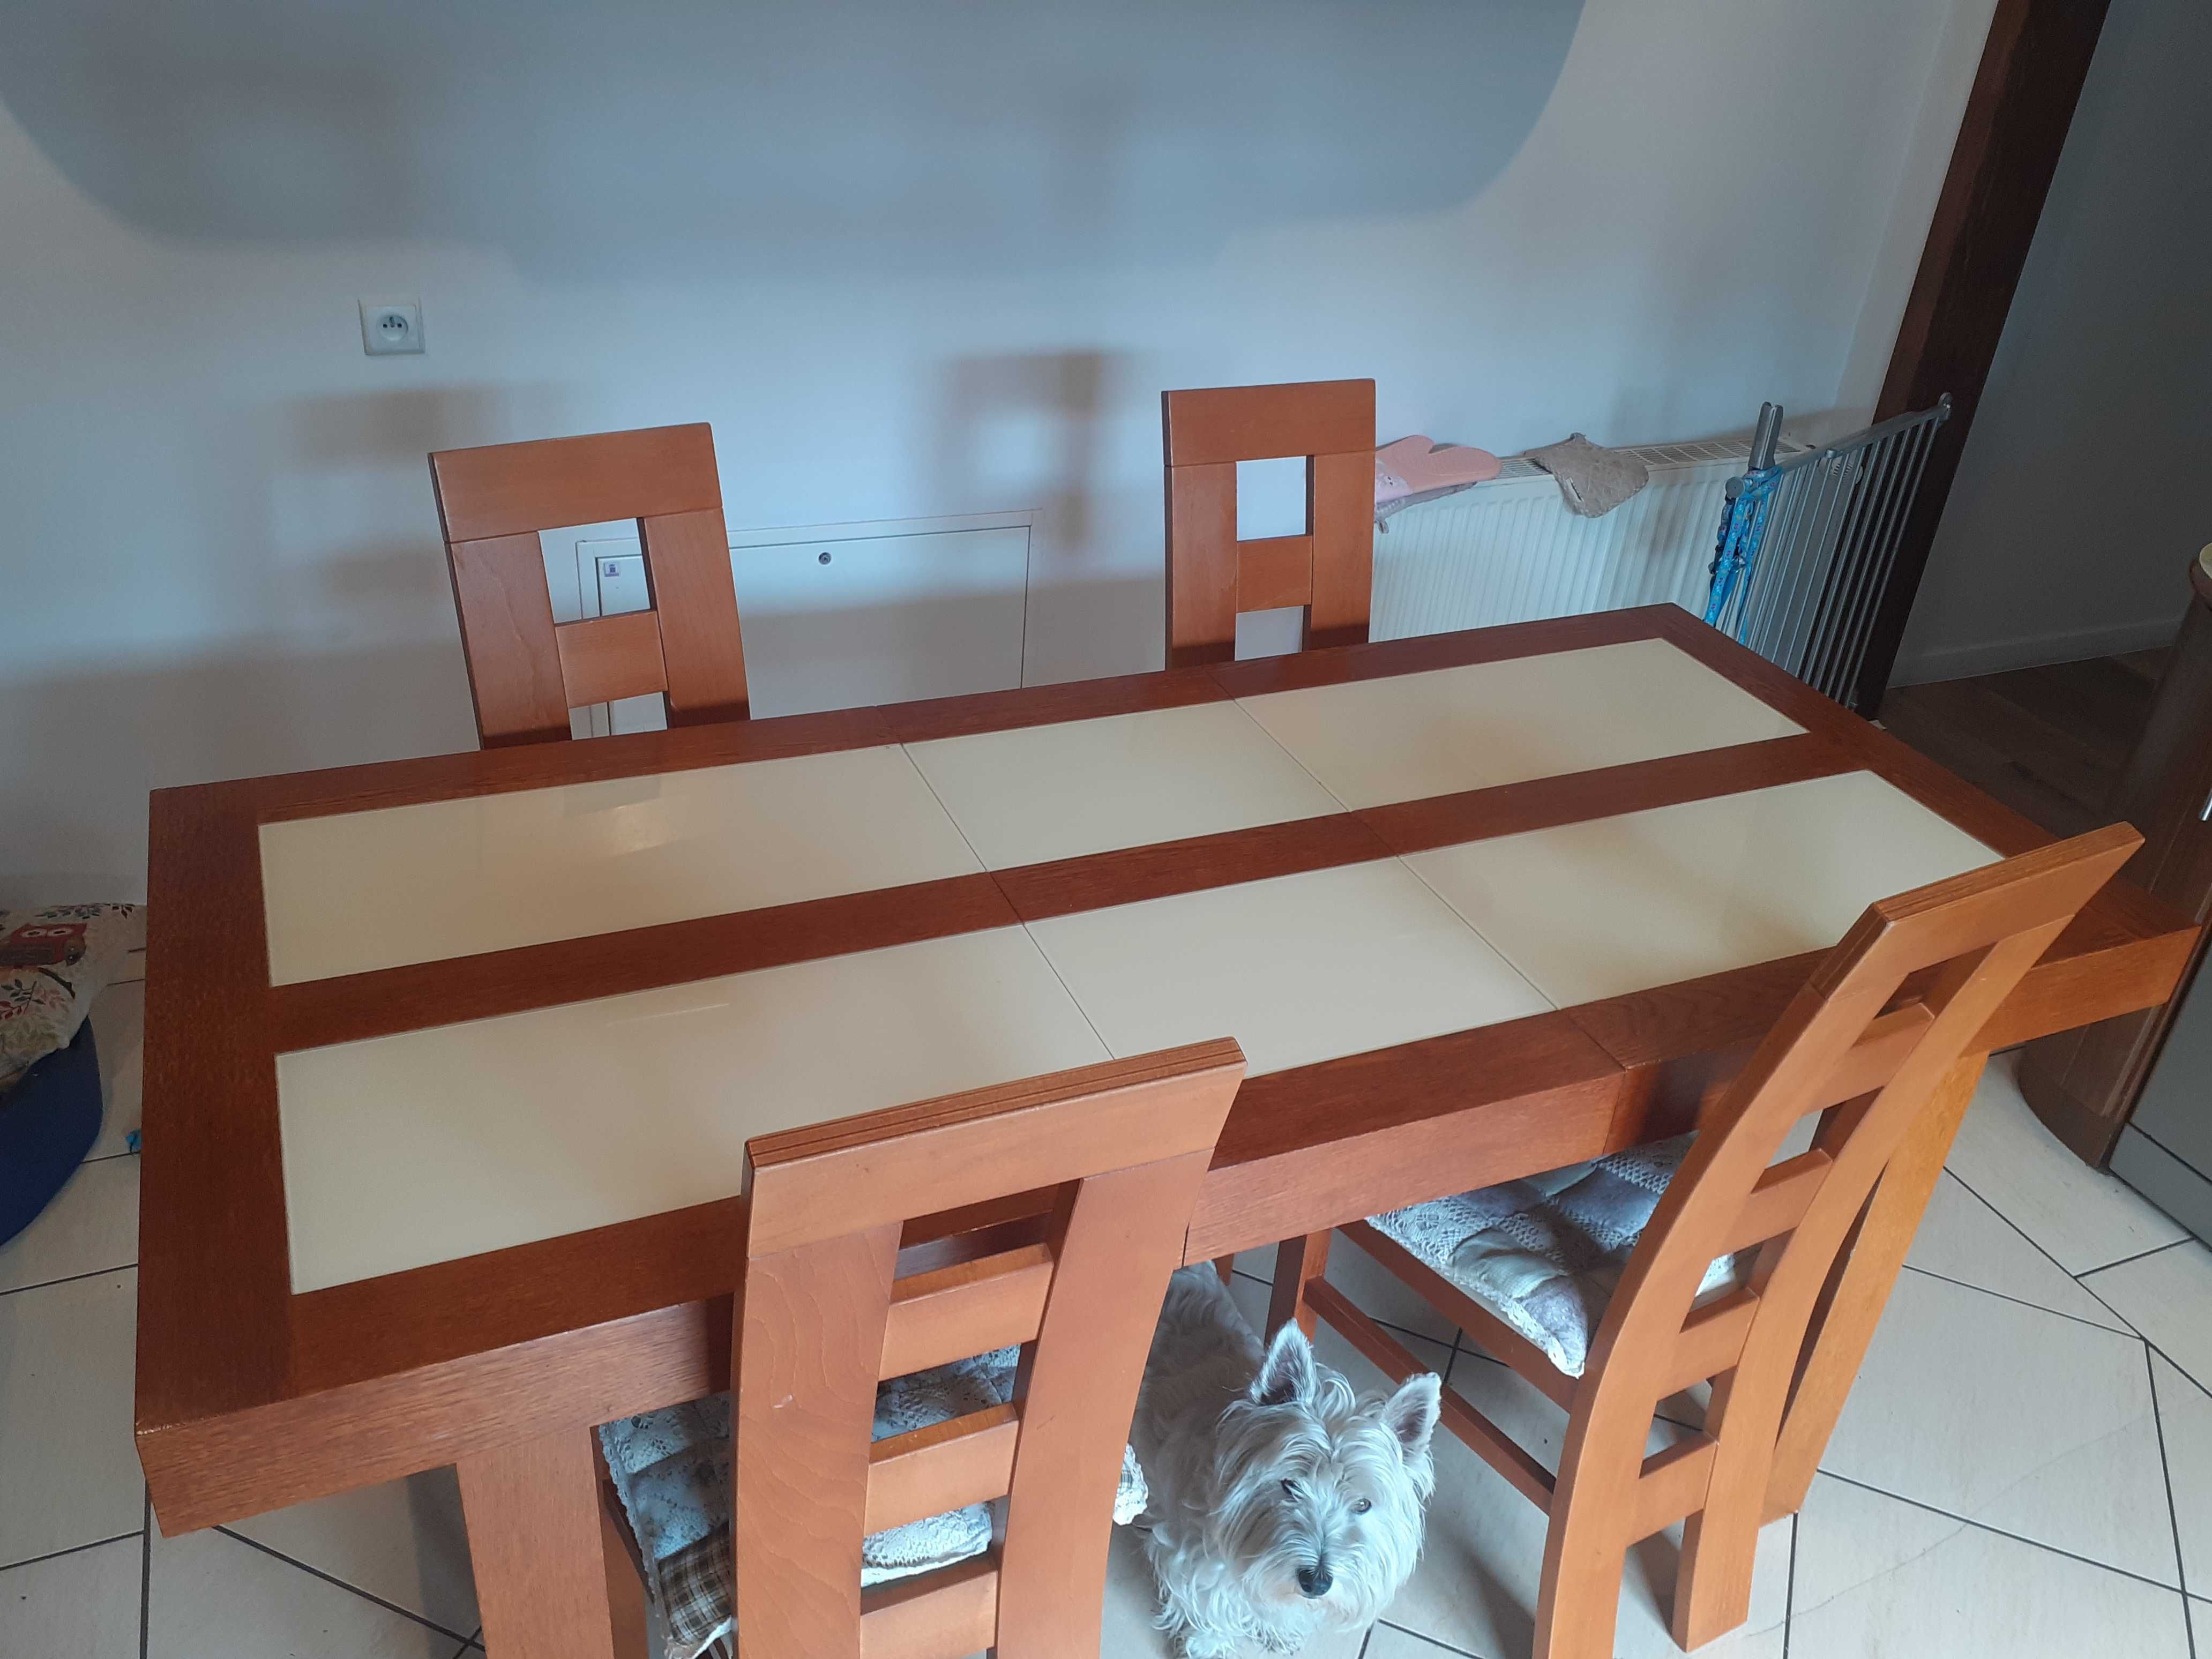 krzesła i stół używane